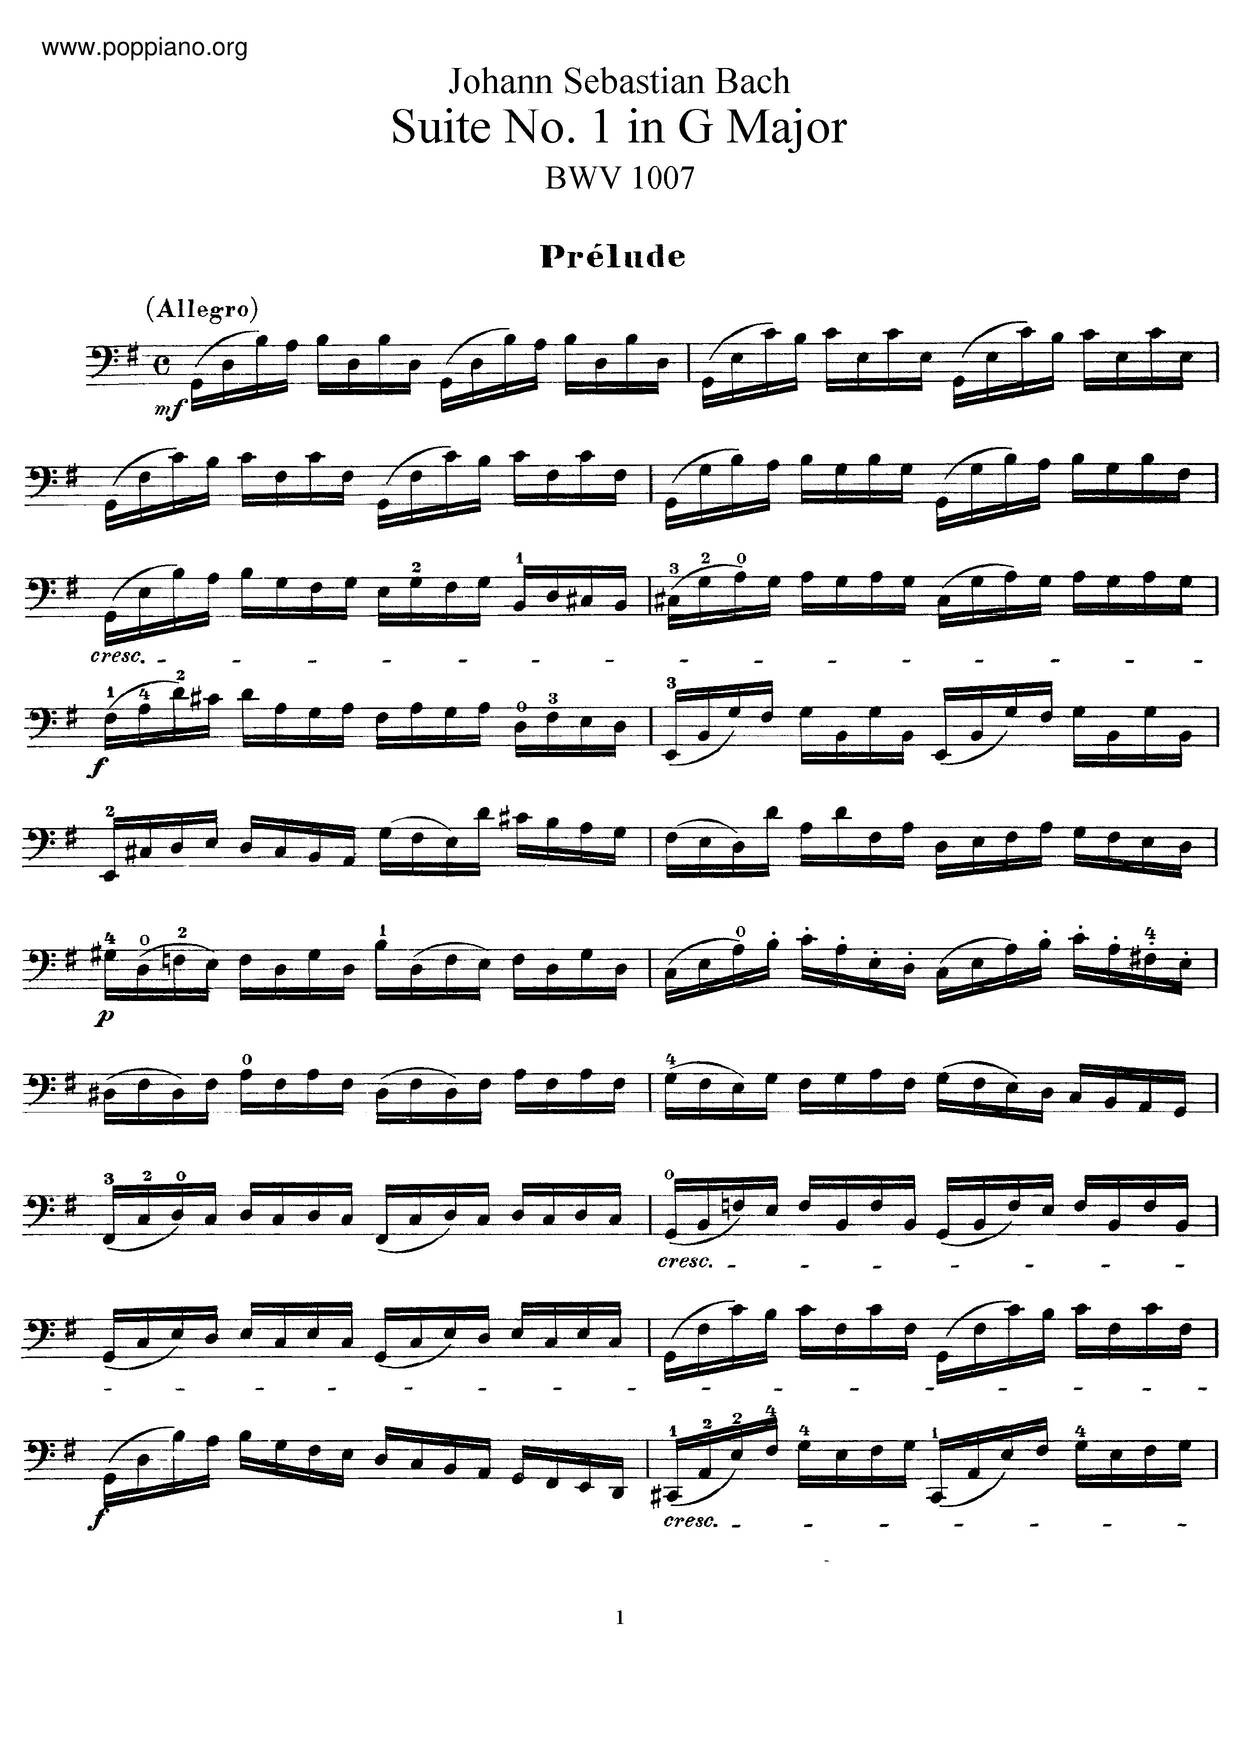 Unaccompanied Cello Suite No. 1 in G major, BWV 1007: I. Préludeピアノ譜